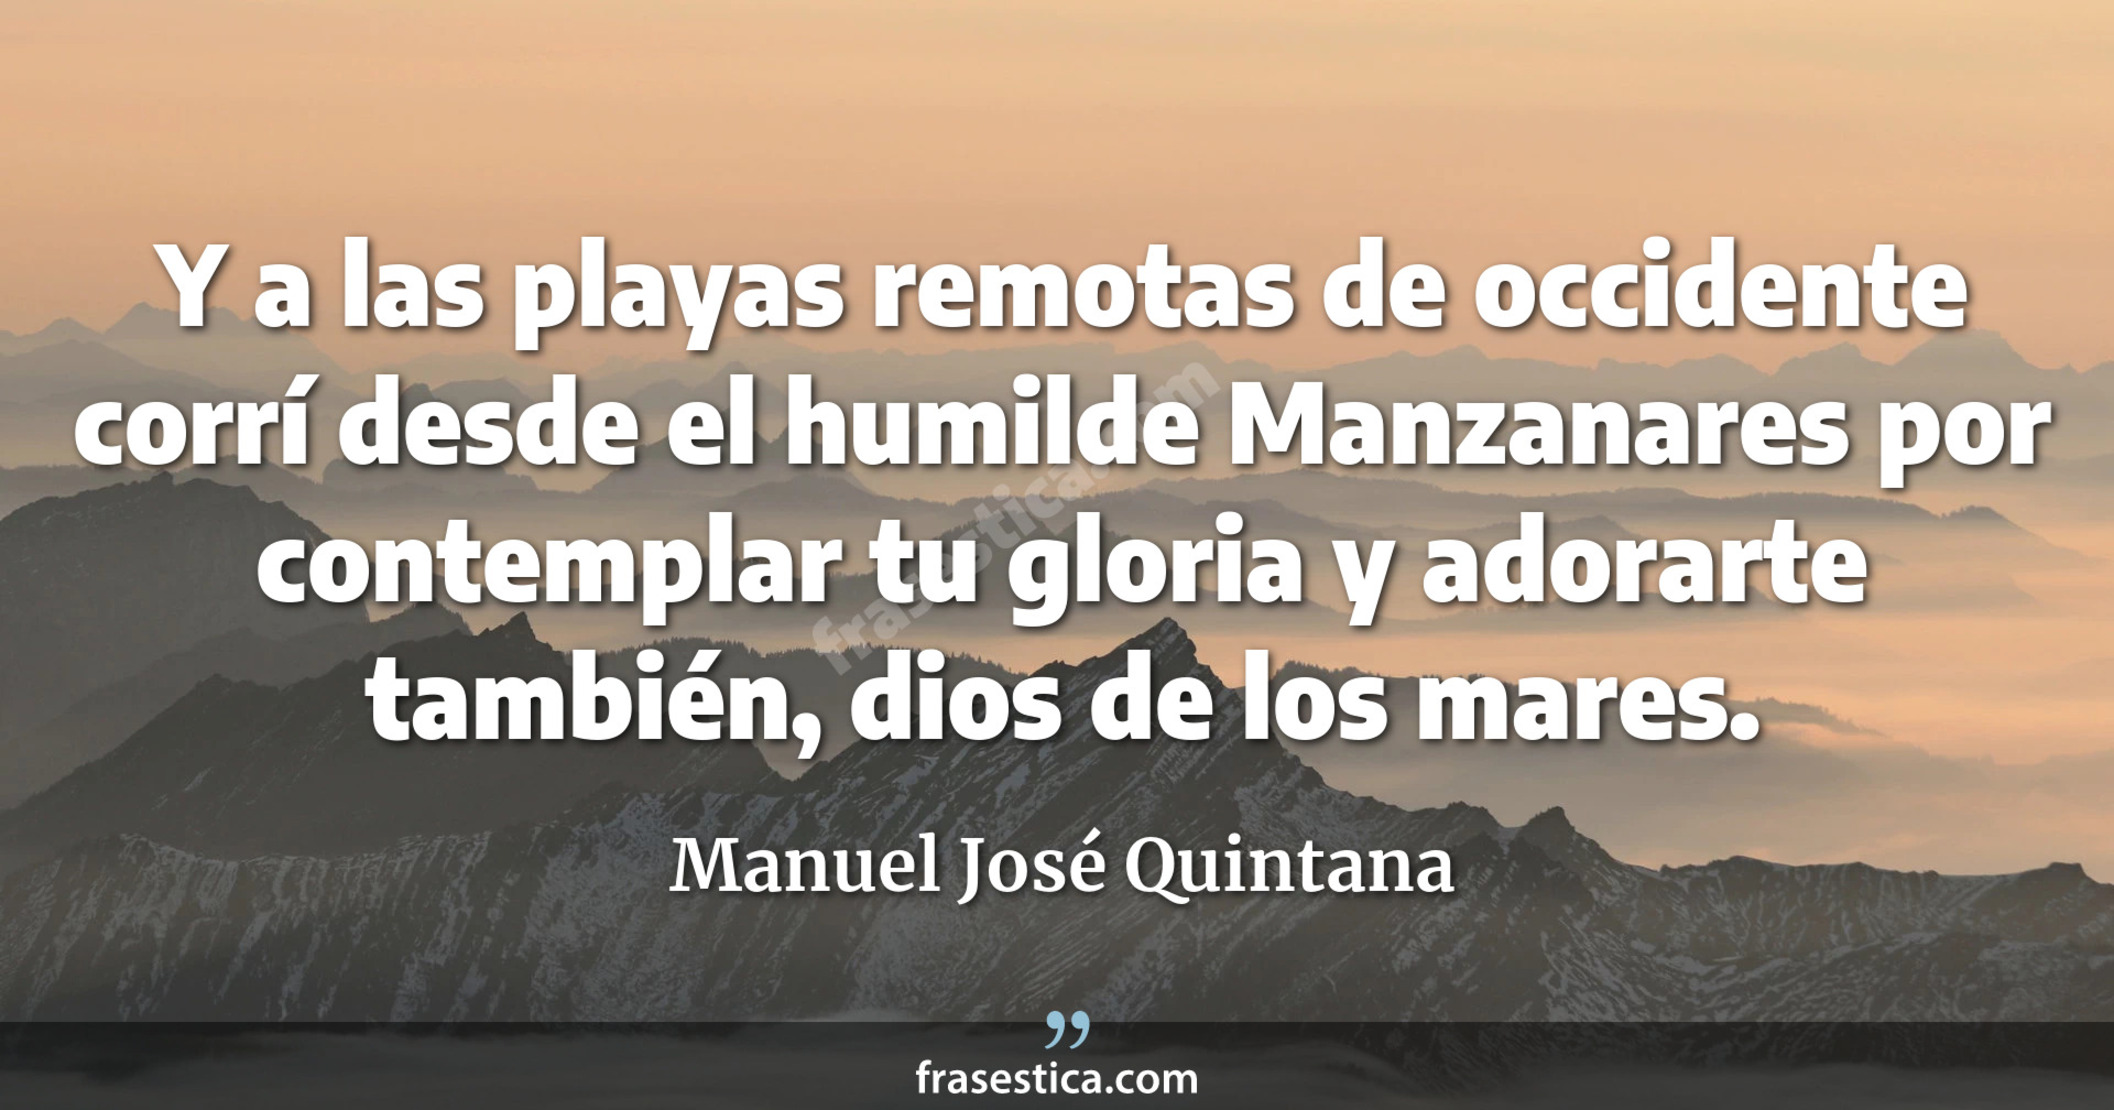 Y a las playas remotas de occidente corrí desde el humilde Manzanares por contemplar tu gloria y adorarte también, dios de los mares. - Manuel José Quintana